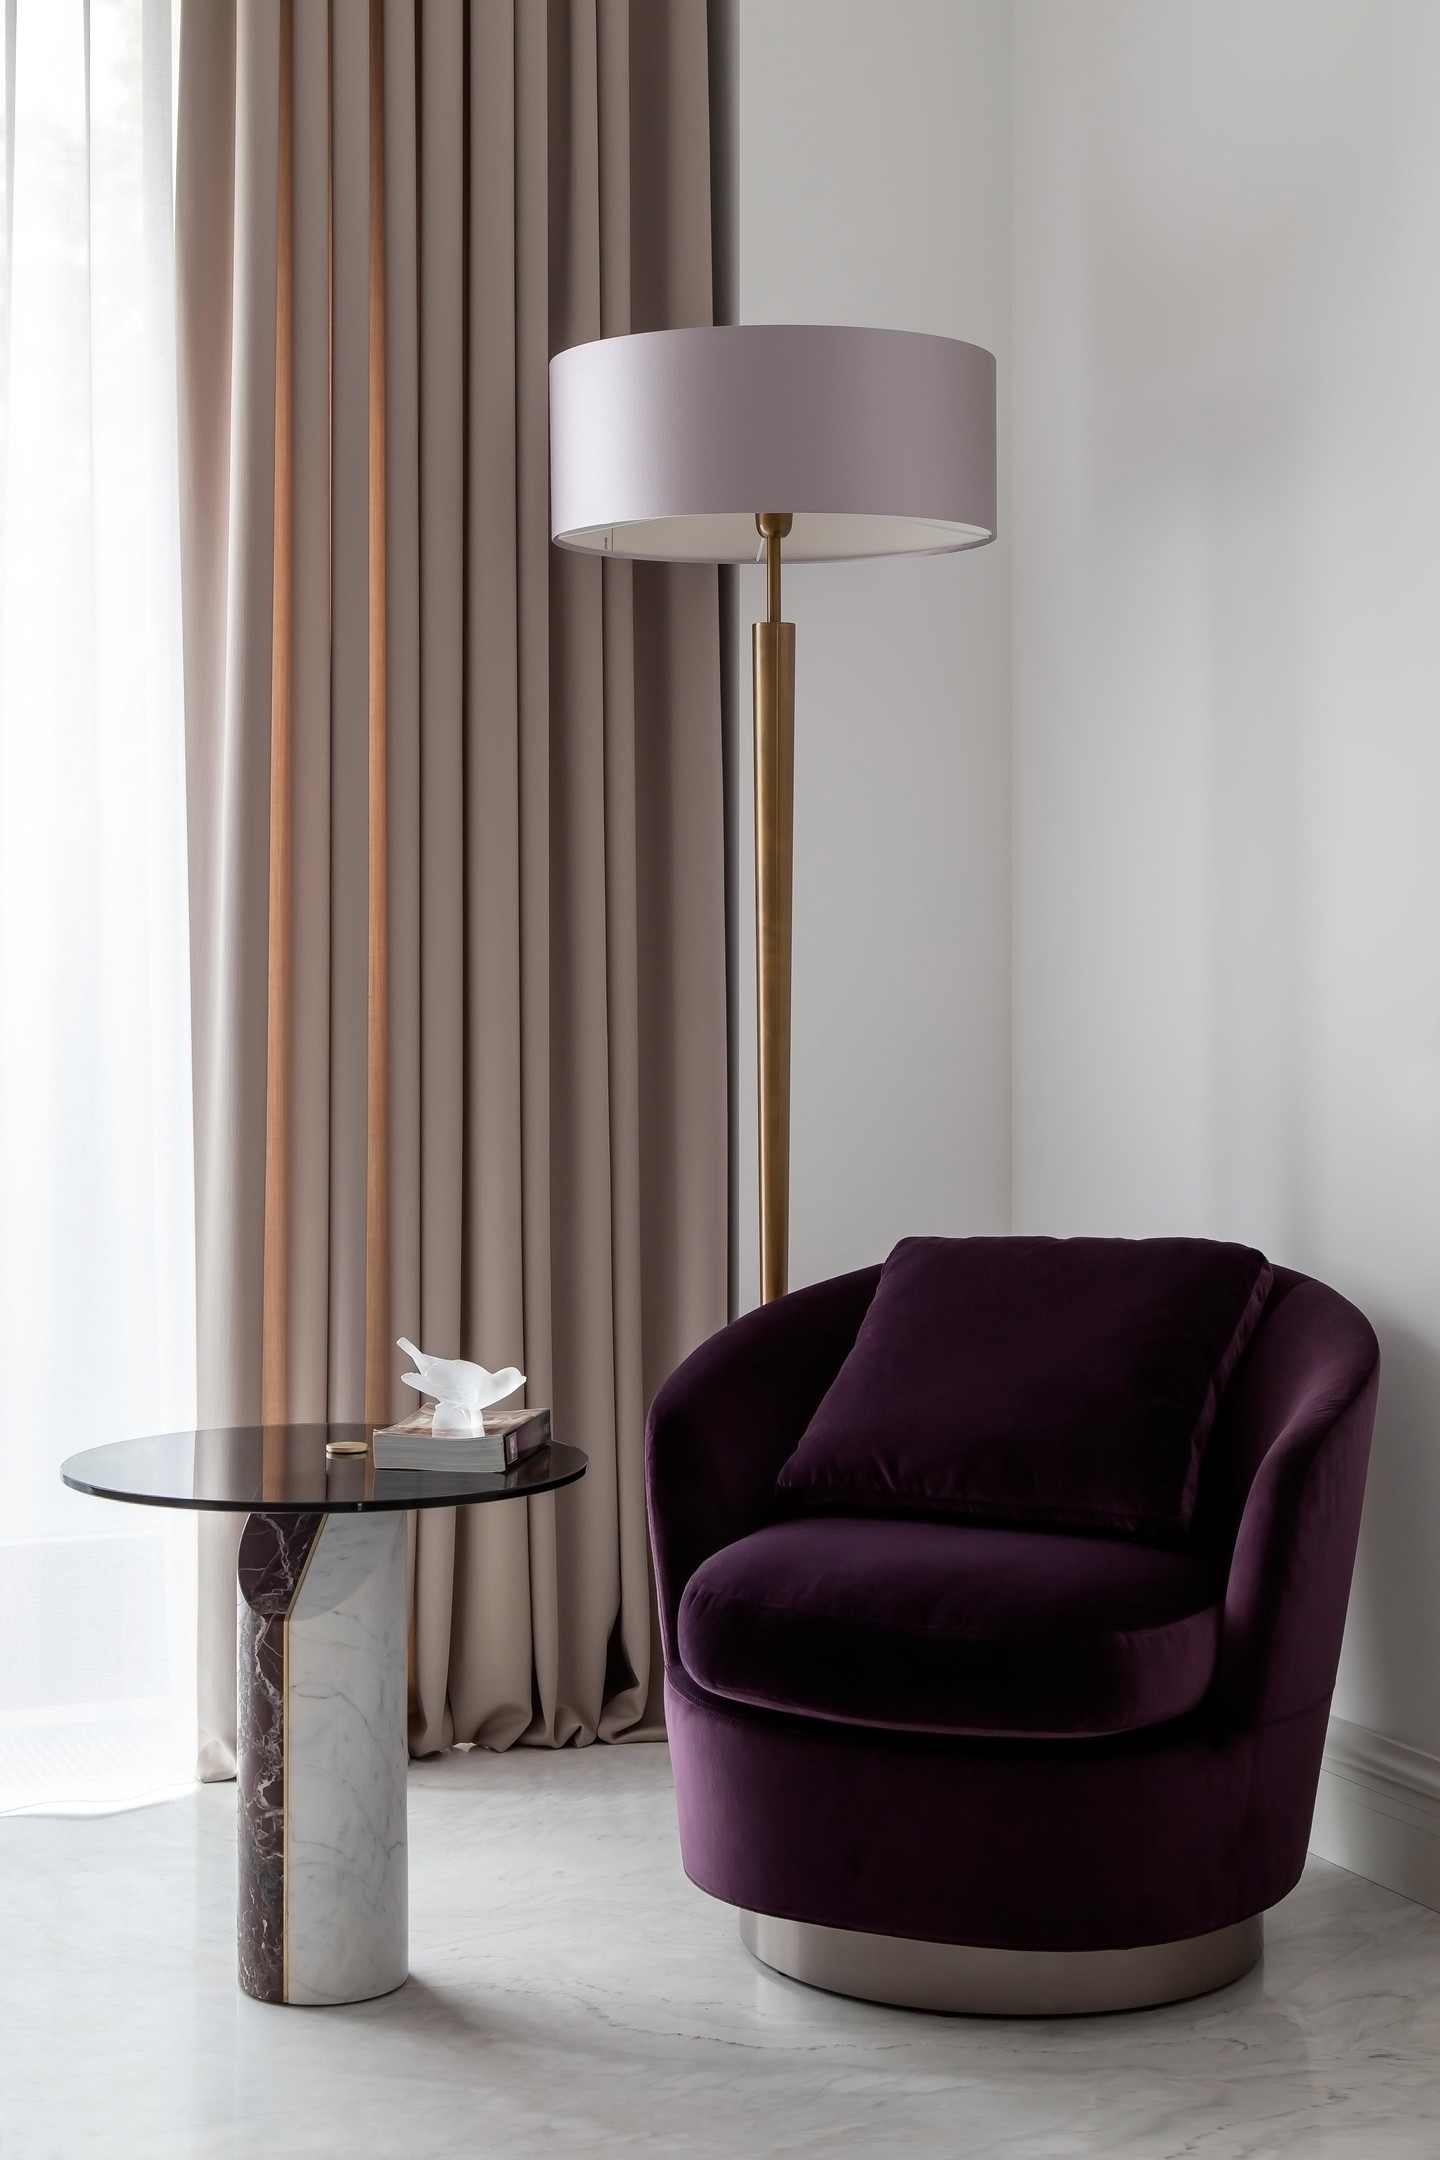 Yếu tố màu tím, bên cạnh đèn bàn, cũng được sử dụng cho ghế bành tại góc thư giãn ở phòng ngủ, cùng với bàn phụ và đèn sàn dáng cao thuận tiện khi đọc sách.